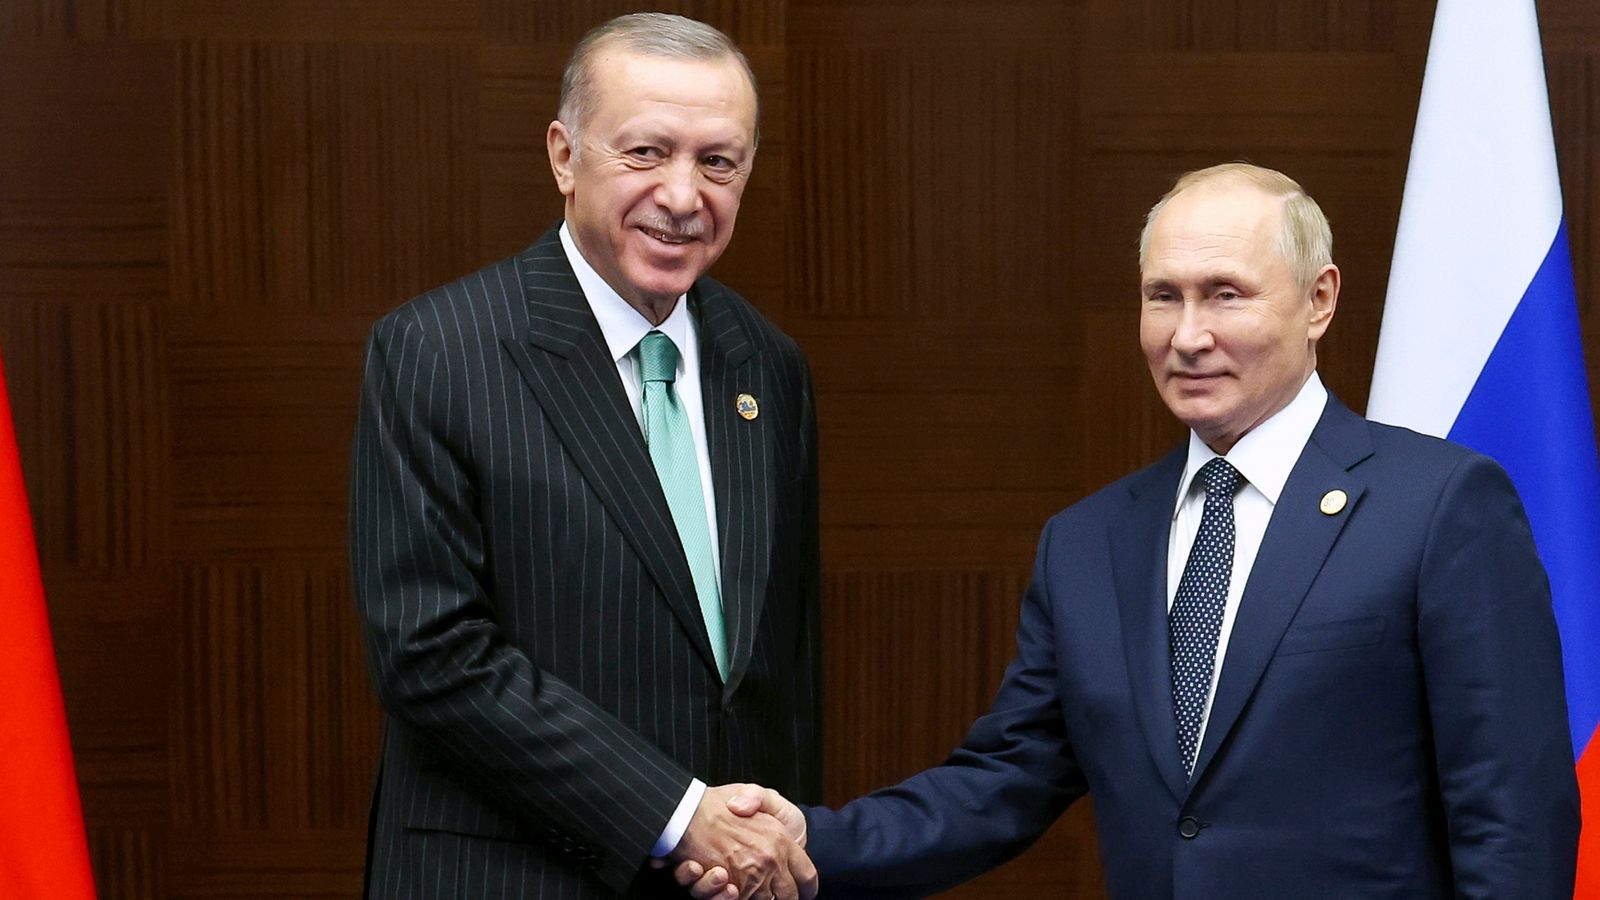 Vladimir Putin plans rare overseas trip to visit NATO member Turkey